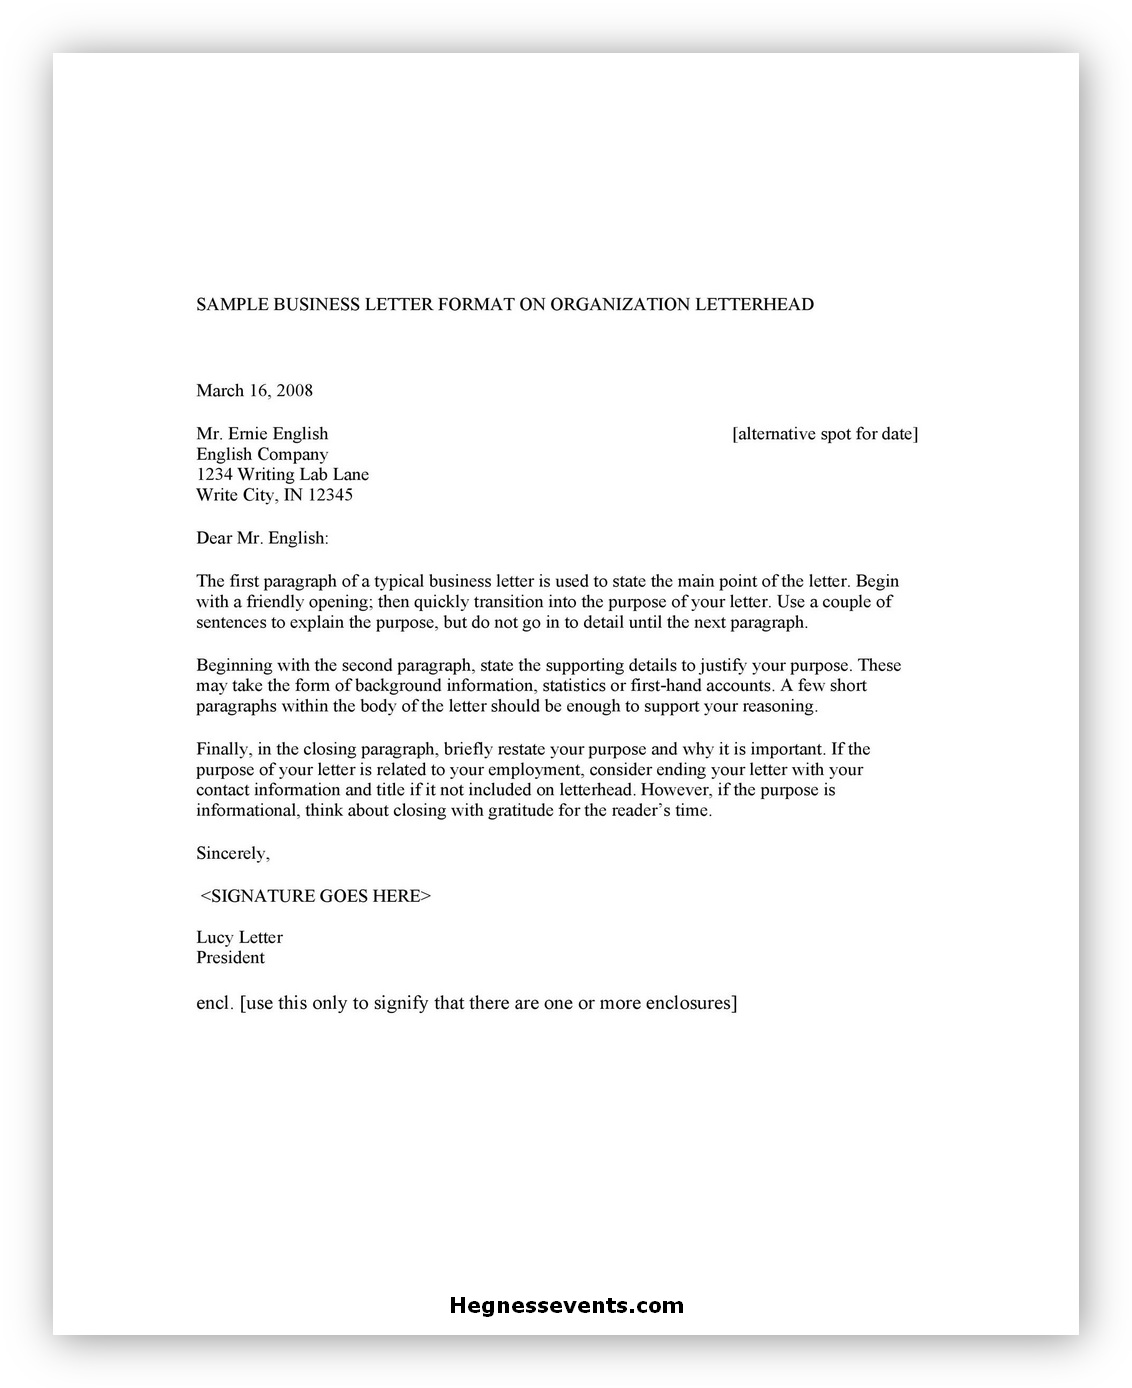 Sample Business Letter 06